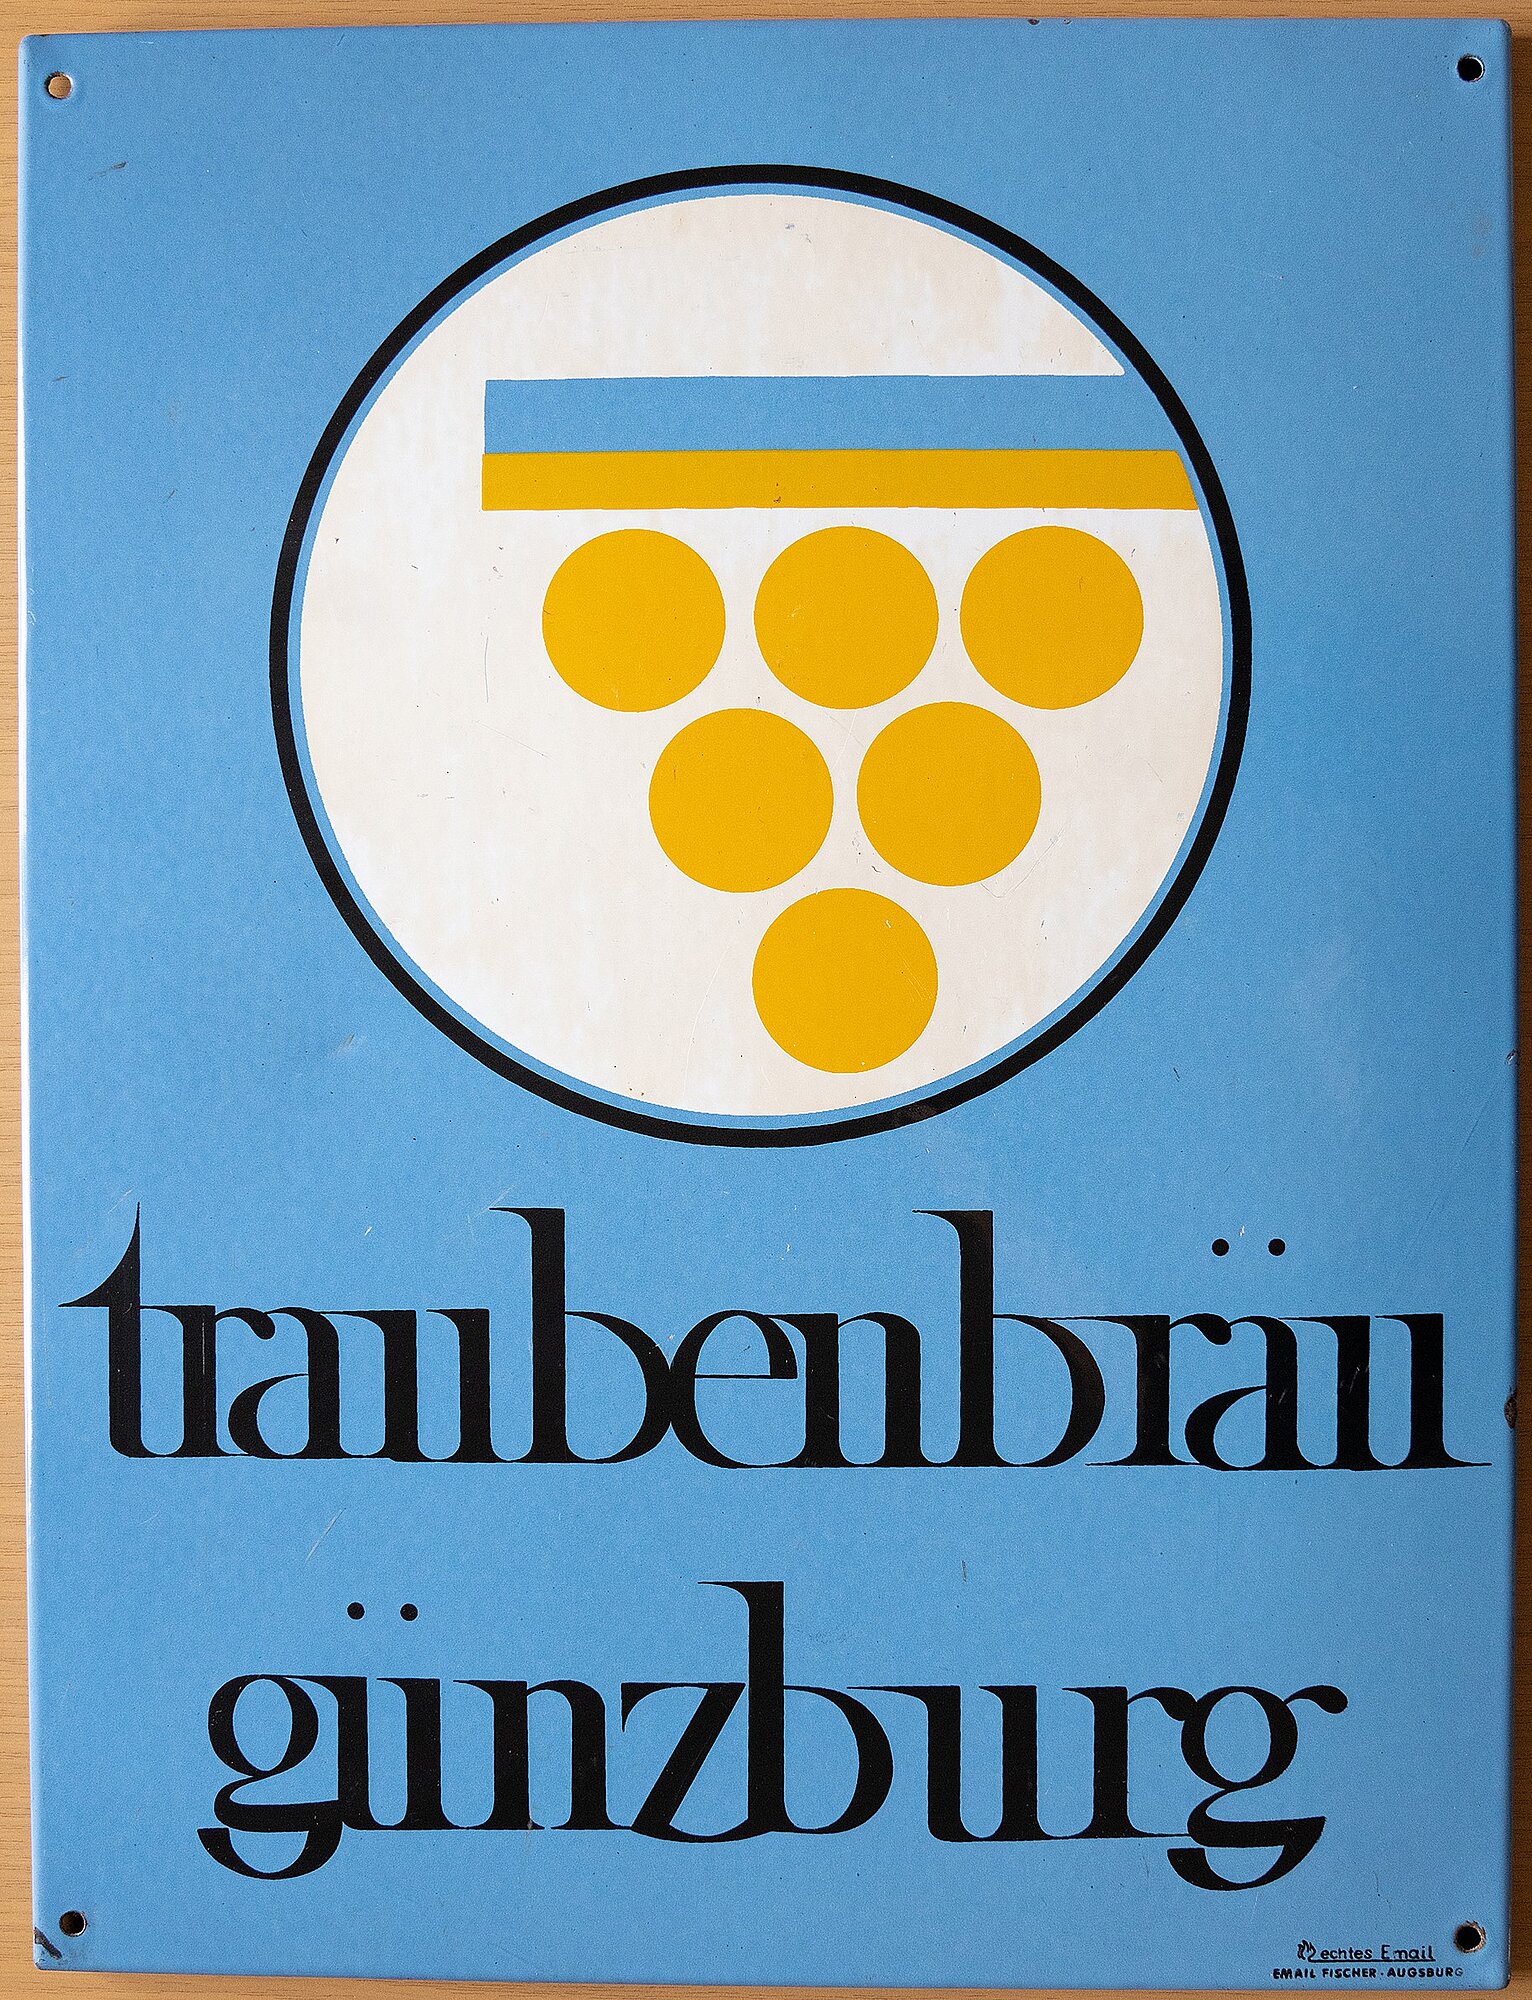 Werbeschild der Traubenbrauerei Günzburg um 1970. Foto: Philipp Röger für die Stadt Günzburg.